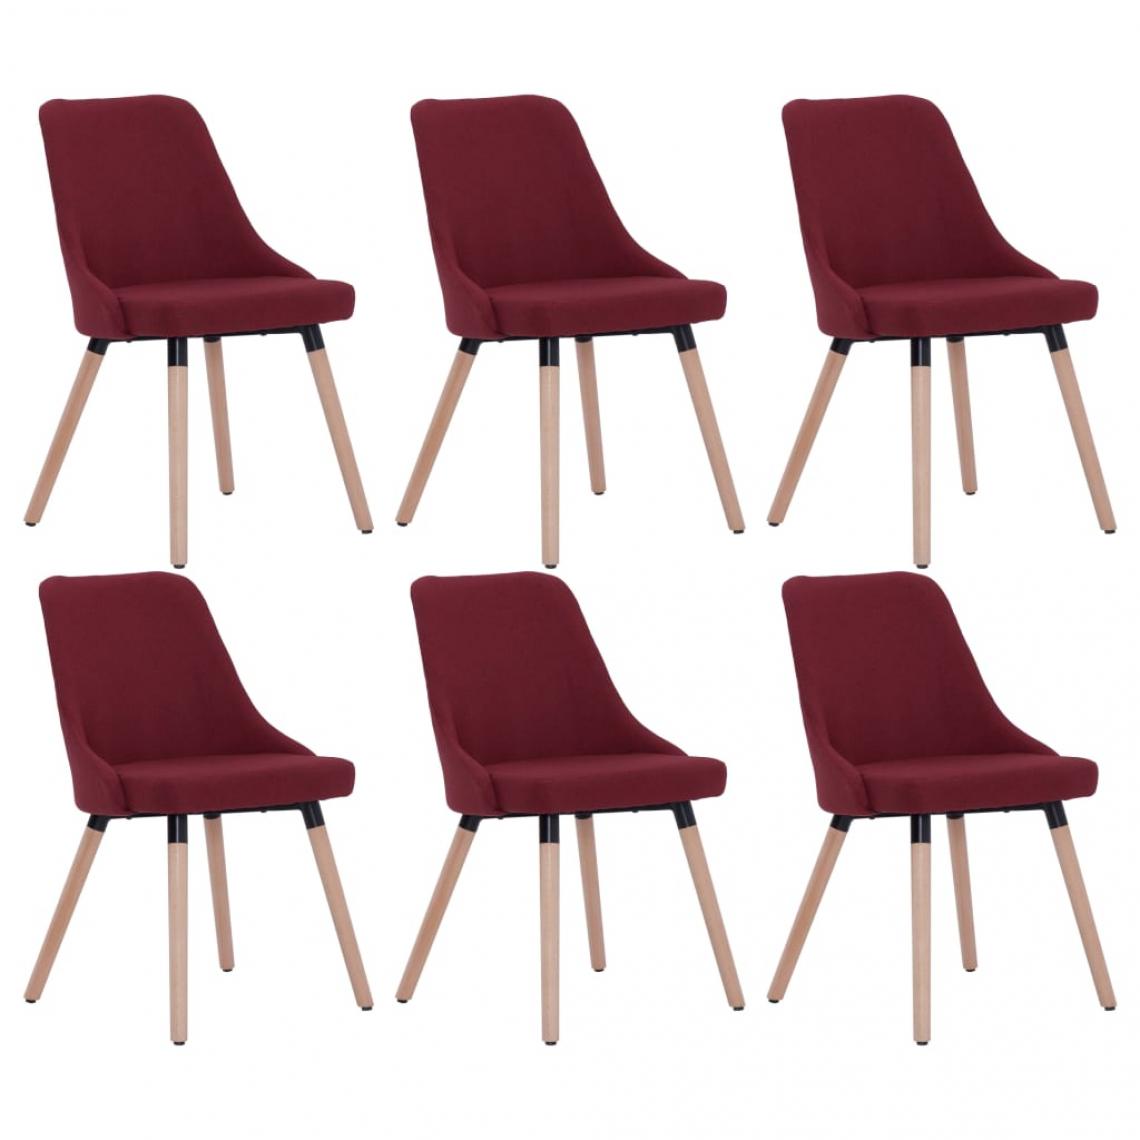 Decoshop26 - Lot de 6 chaises de salle à manger cuisine design moderne tissu rouge bordeaux CDS022809 - Chaises